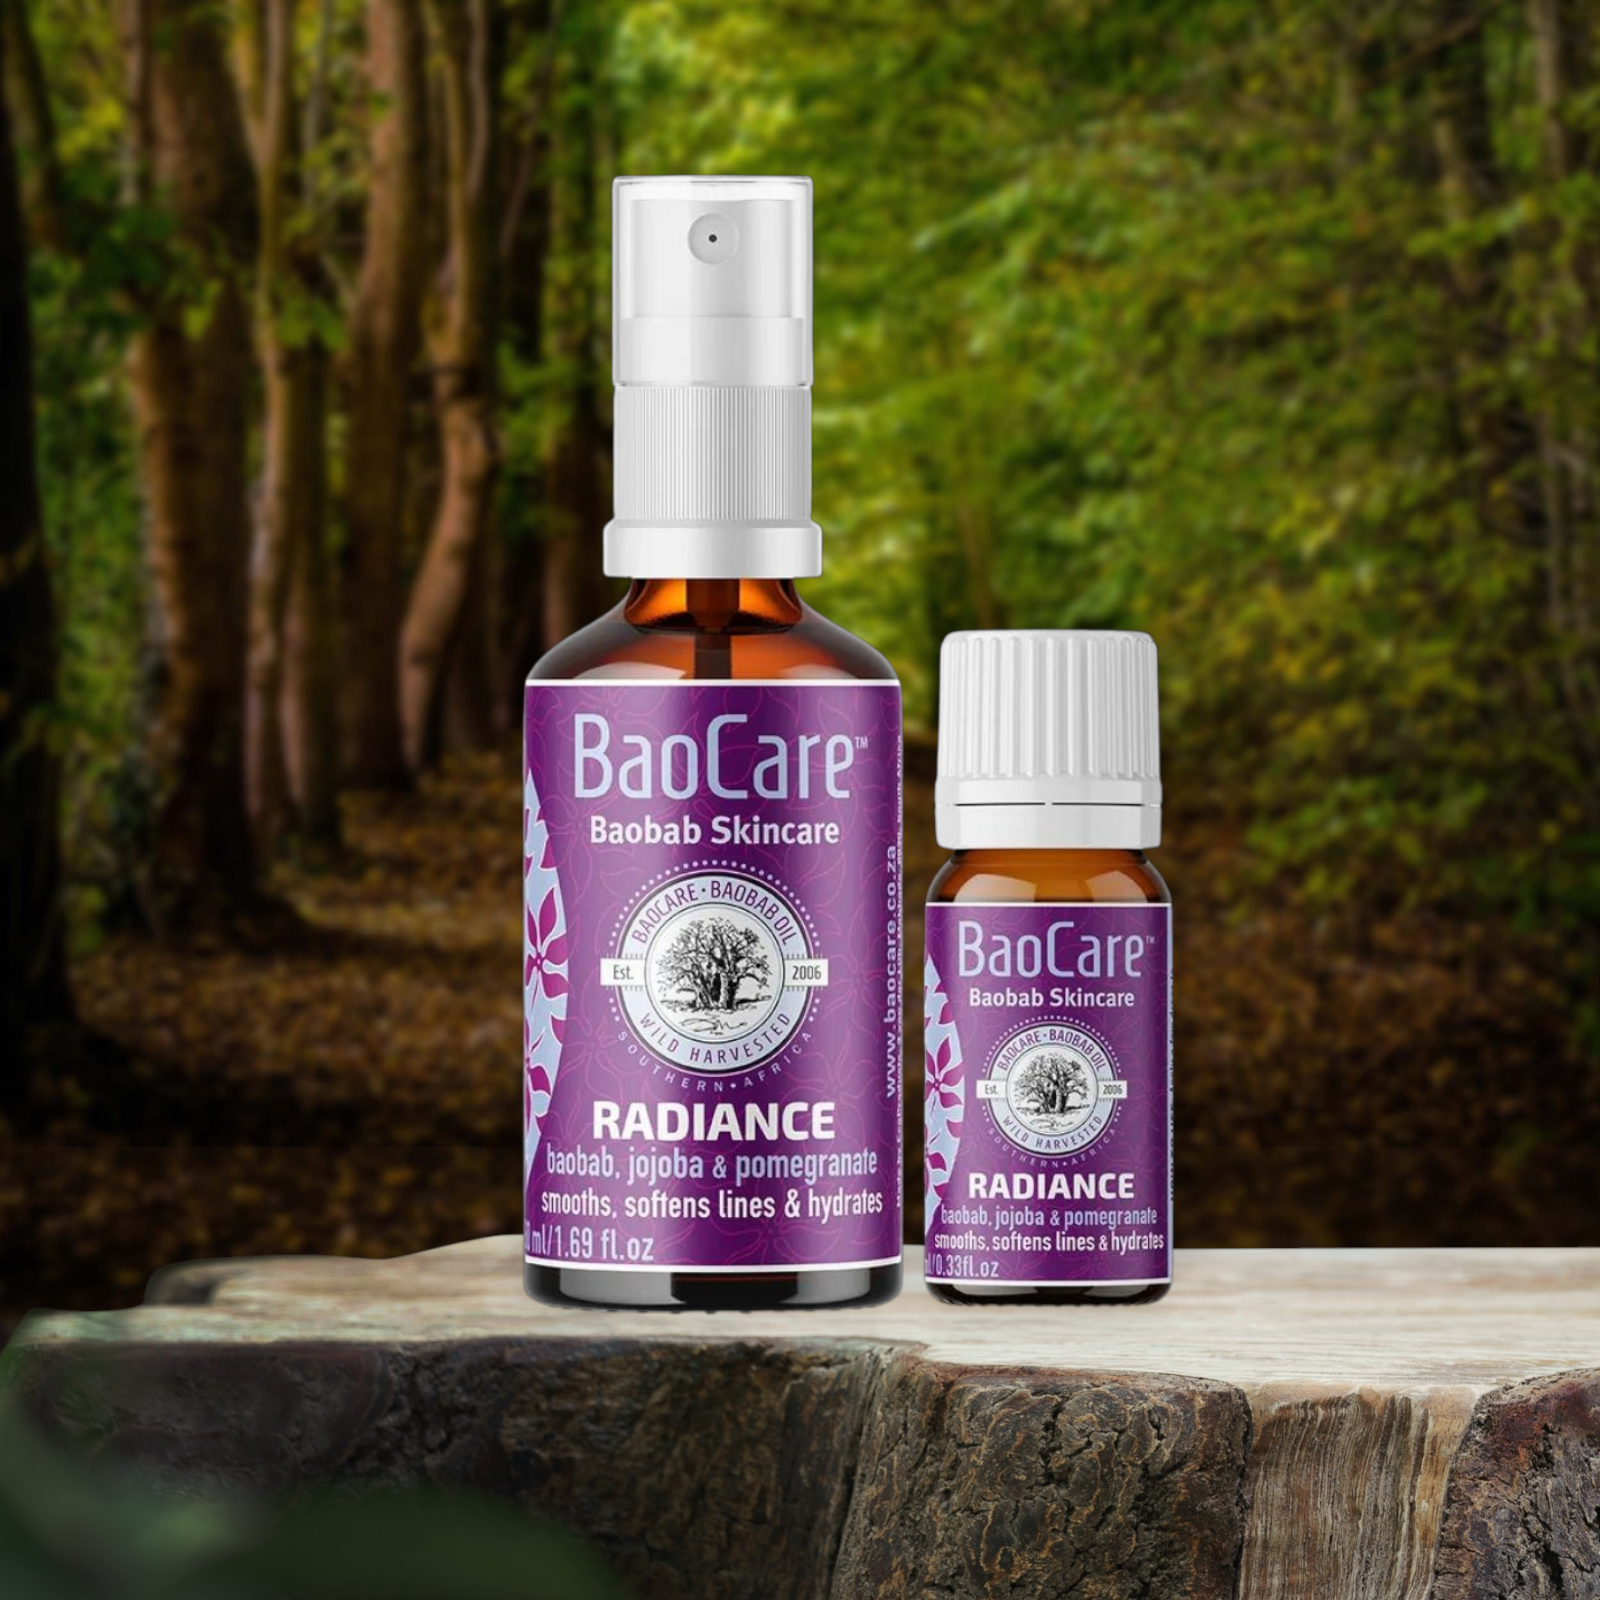 Pureday To Baocare Radiance 50 ml hudplejeprodukter, en sprayflaske og en dråbeflaske mærket "radiance", placeres på en træstamme i et skovområde, hvor de fremhæver deres økologiske ingredienser.